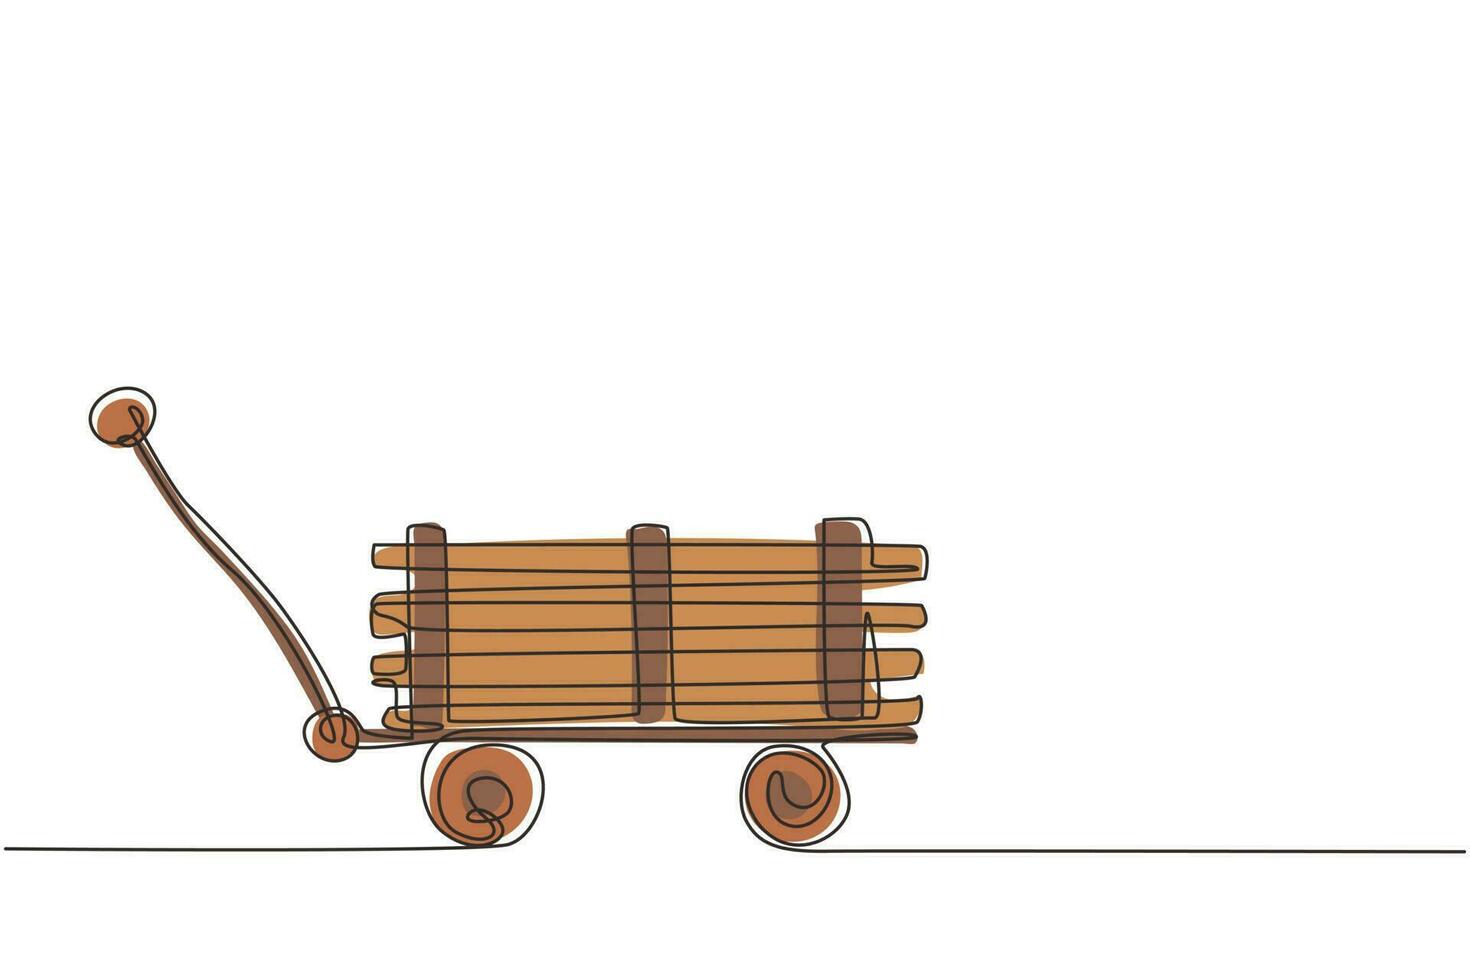 Mini vagón de juguete de dibujo continuo de una línea con madera. carretilla de granja. equipo de carro de jardín para jardinería, cosecha, plantación de plántulas. ilustración gráfica de vector de diseño de dibujo de una sola línea